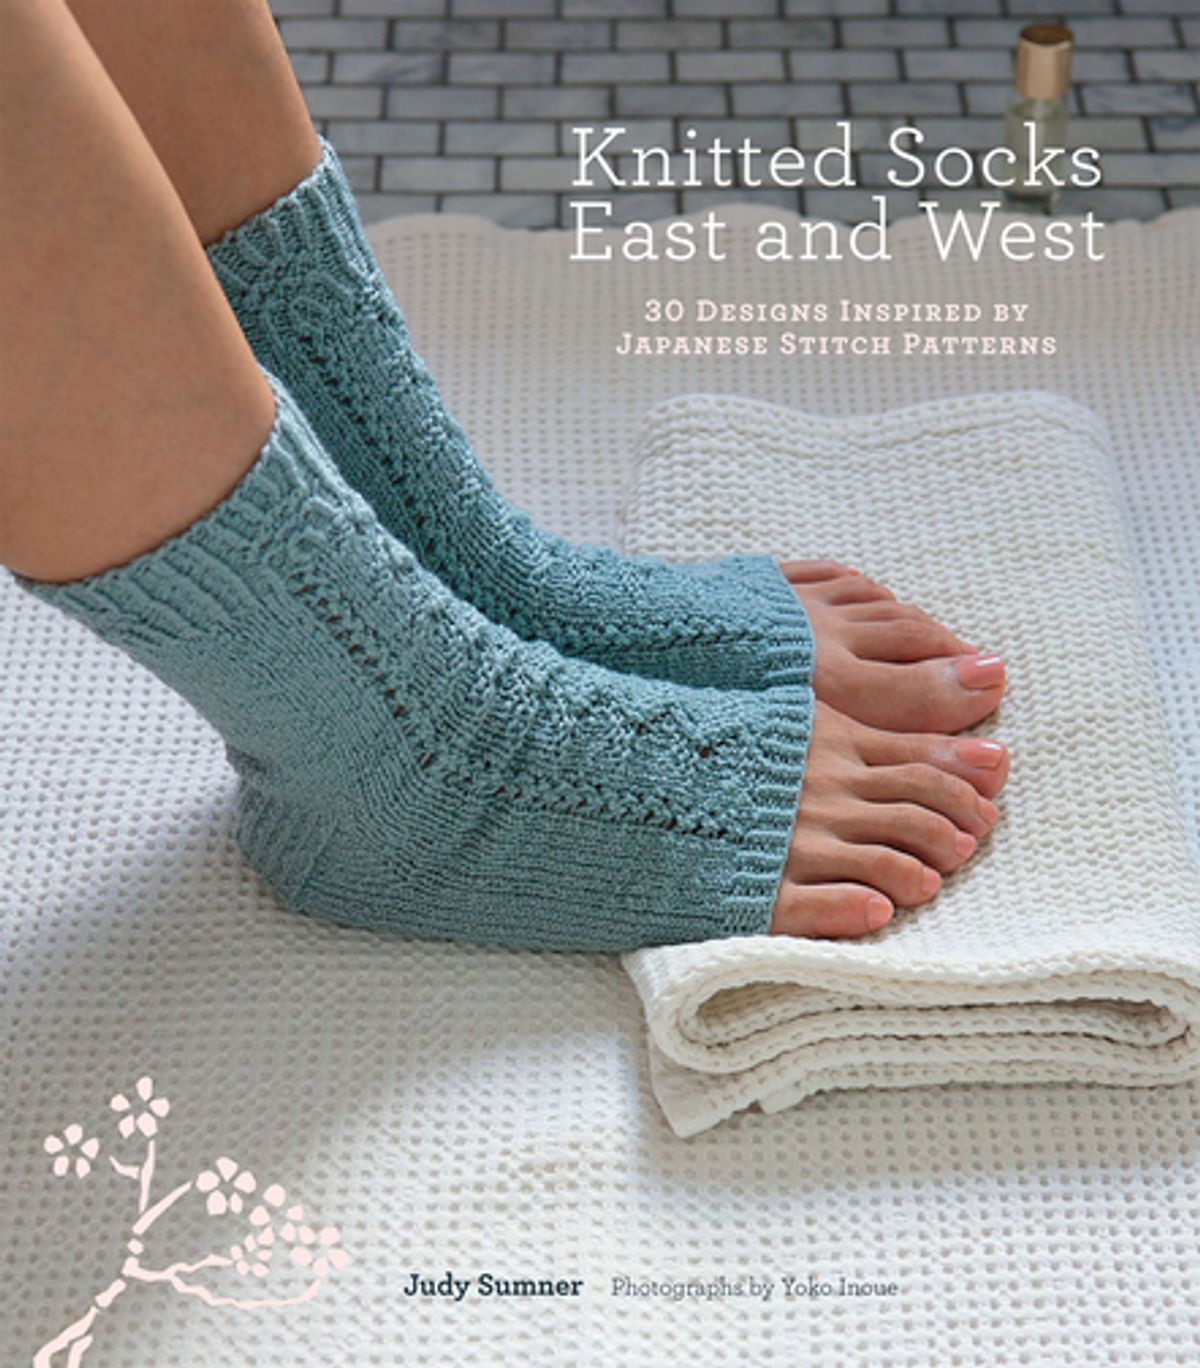 Knitting Patterns For Socks Knitted Socks East And West Ebook Judy Sumner Rakuten Kobo